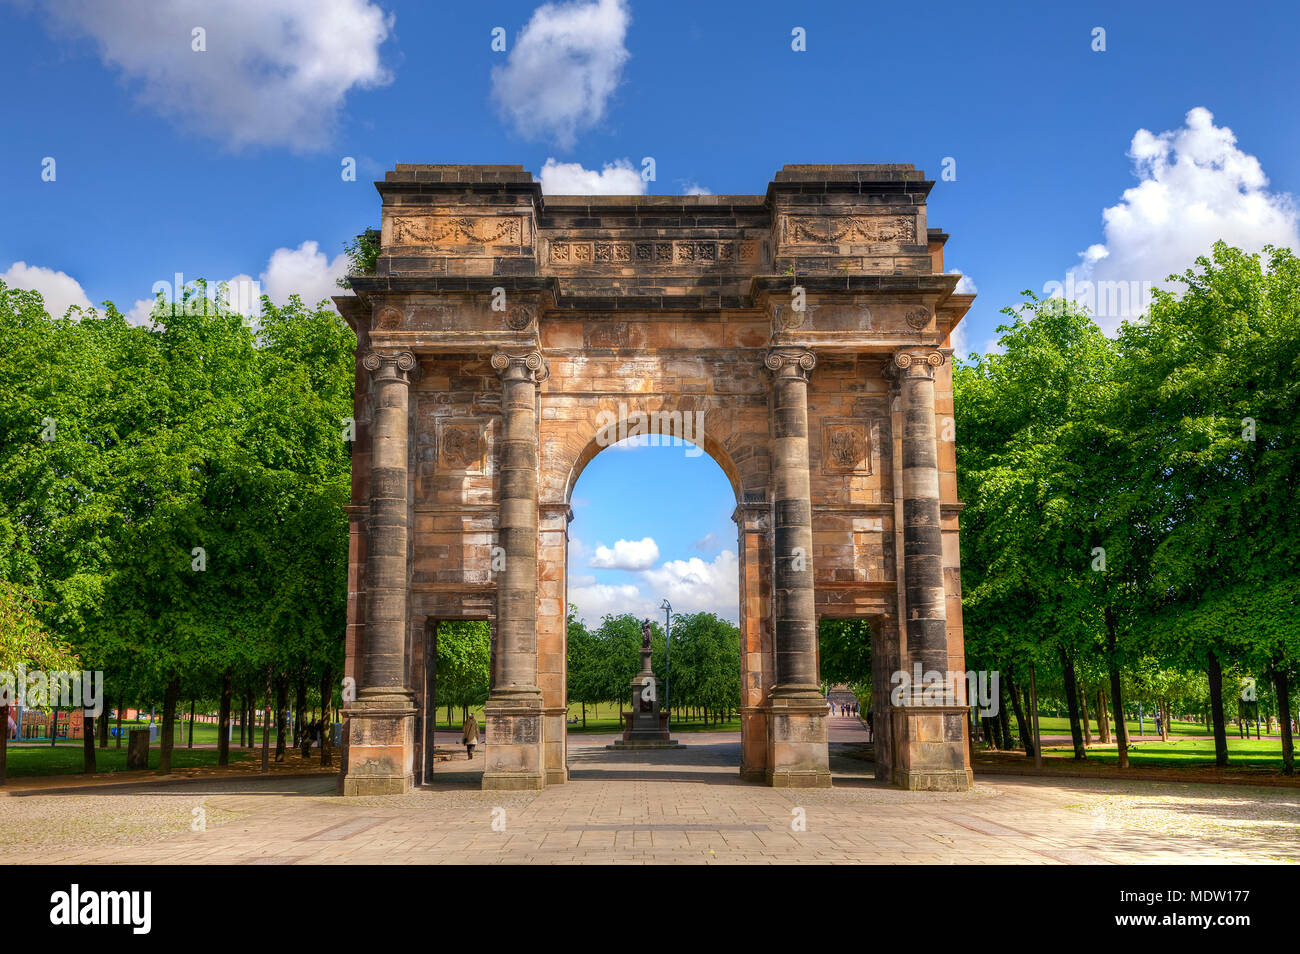 Die McLennan Arch am Eingang zu Glasgow Green, auf blauem Himmel Sommer Tag Stockfoto